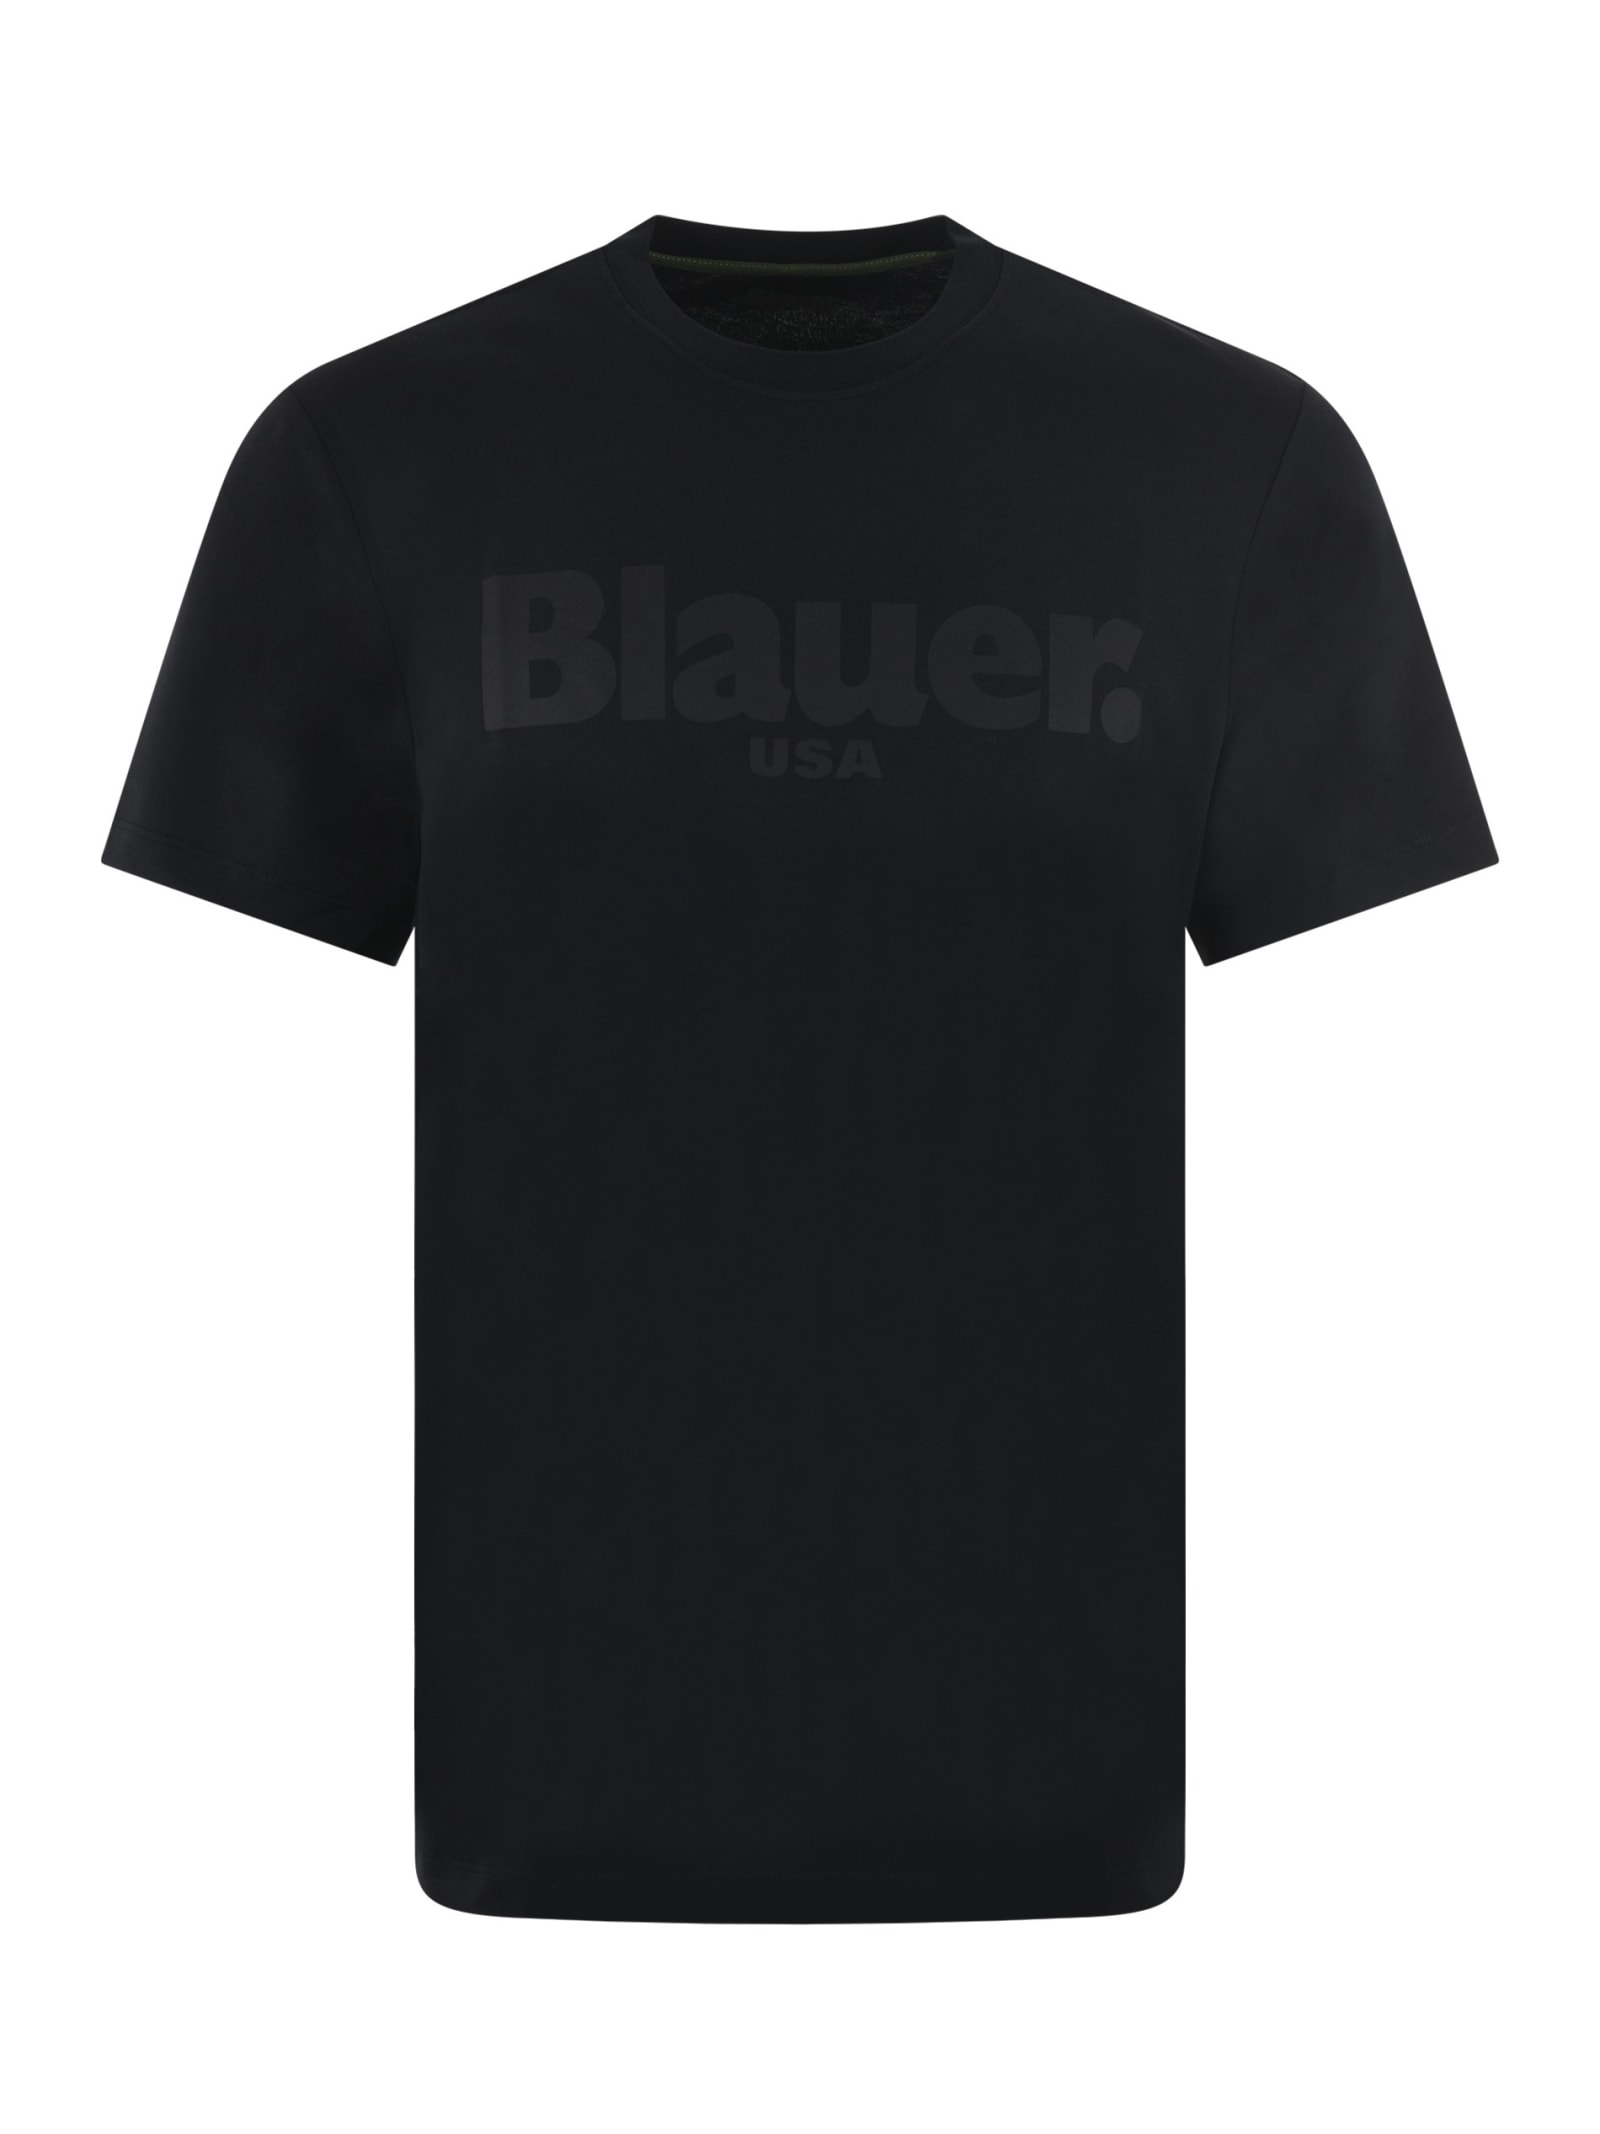 Baluer T-shirt